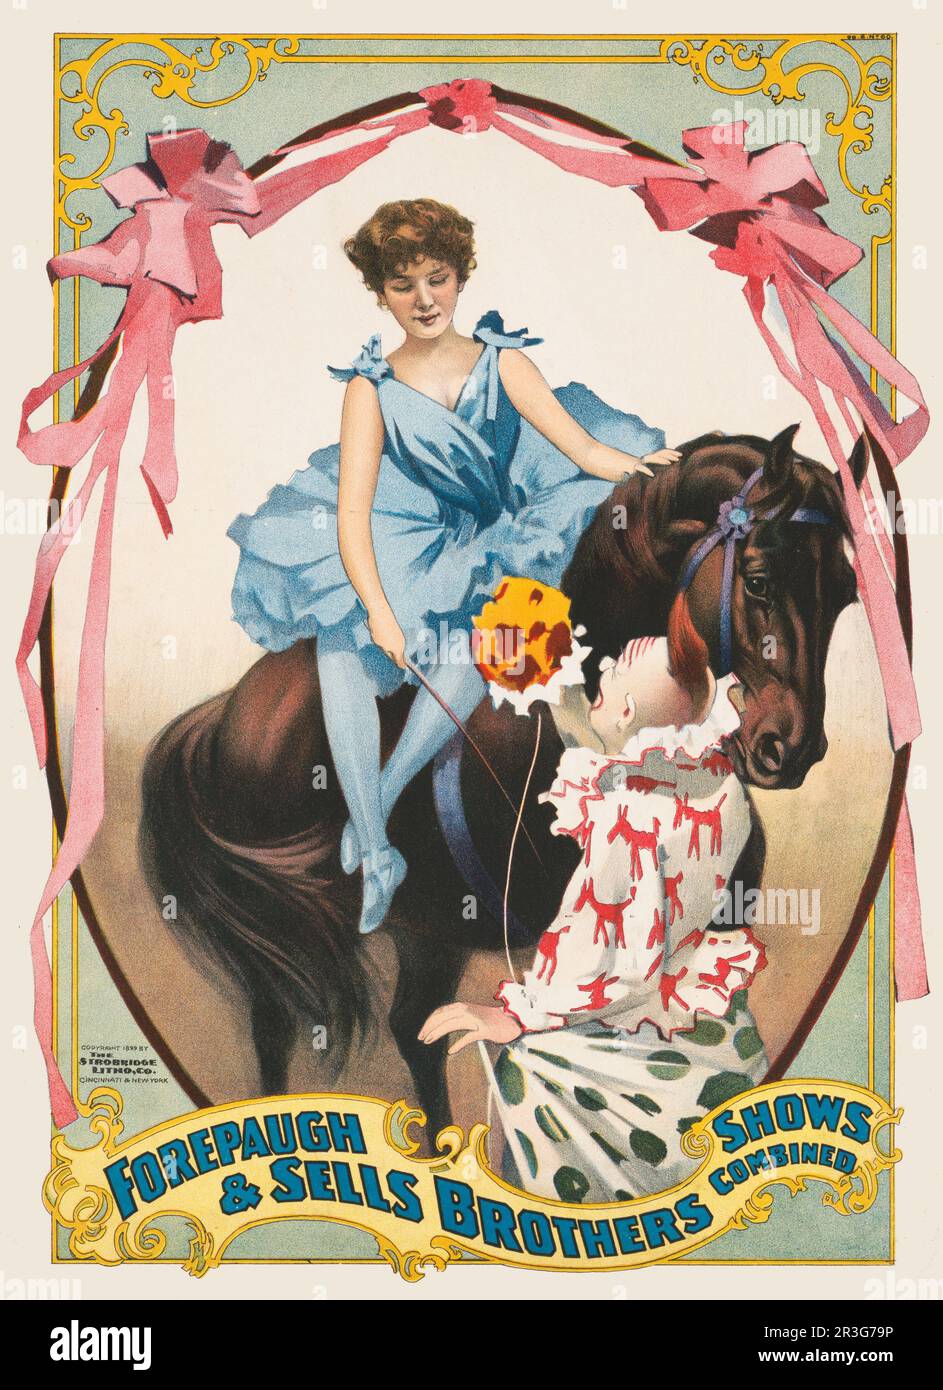 Forepaugh & Brothers affiche de cirque vintage montrant des fleurs de clown à une femme à cheval, vers 1899. Banque D'Images